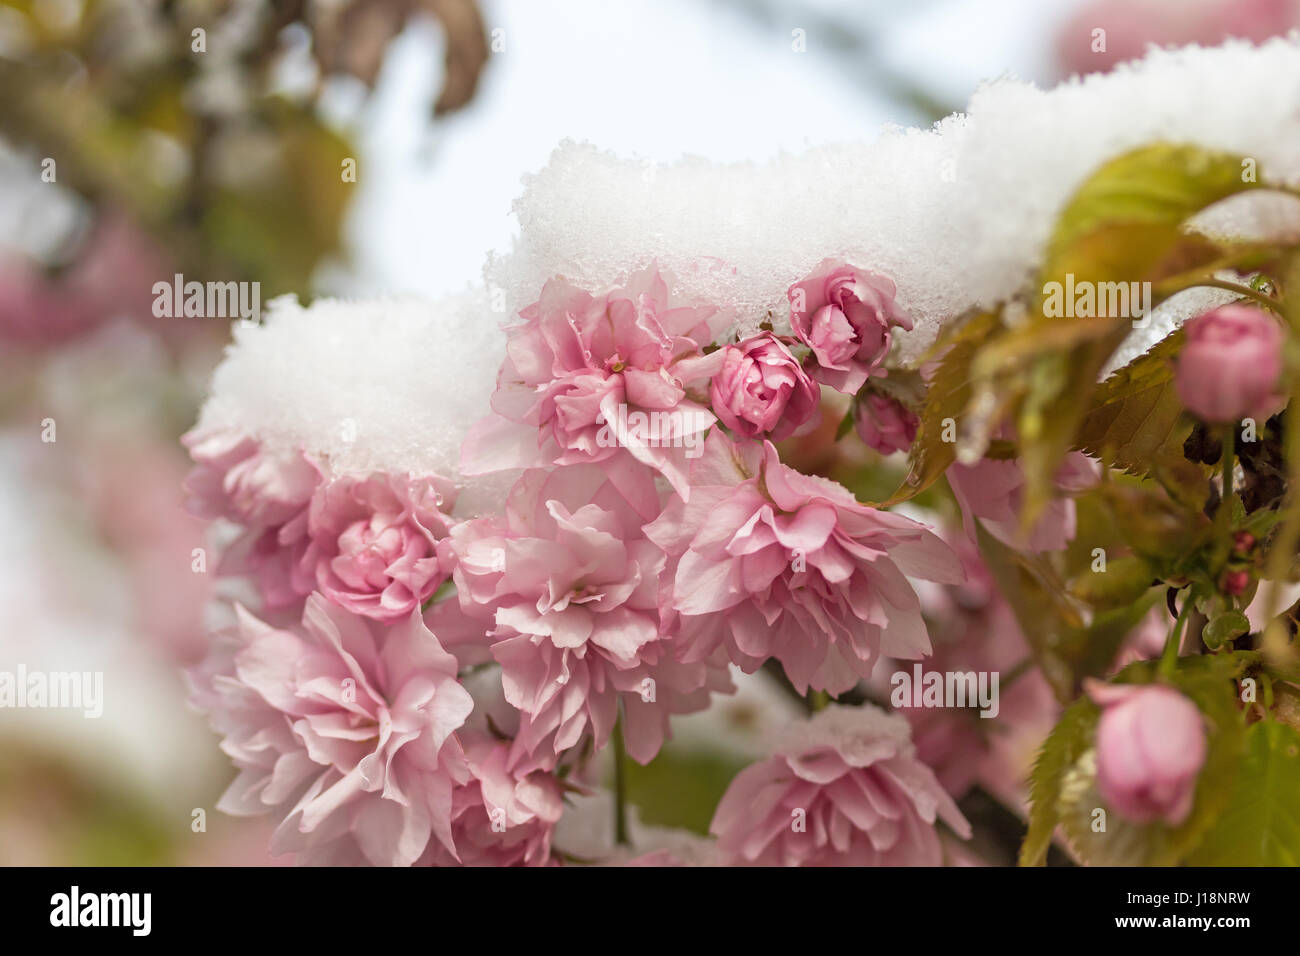 Closeup view of snowy pink flowers of sakura tree Stock Photo